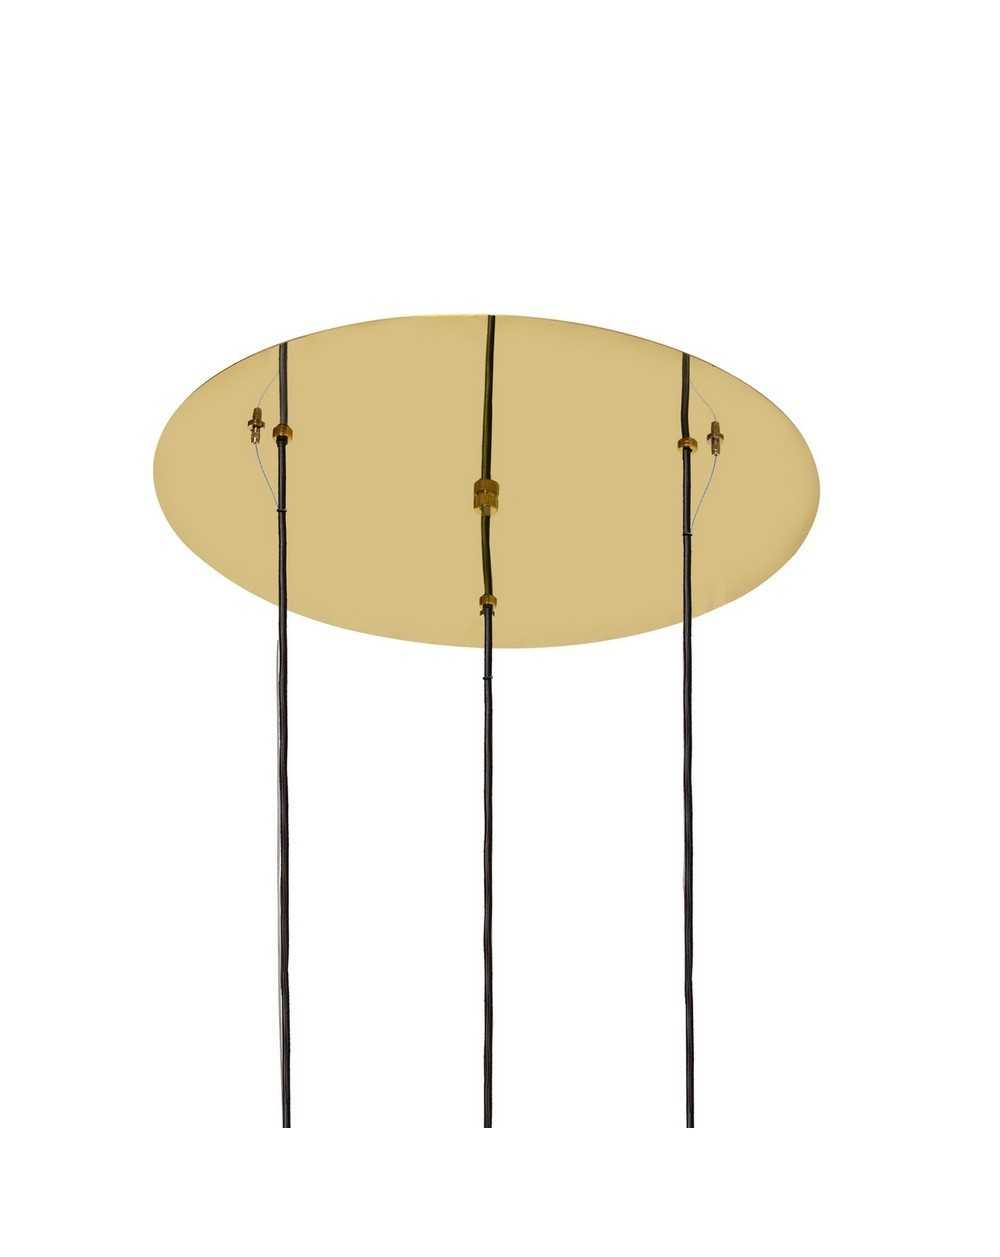 CLOE PLAFON 3 - Lampa wisząca trzypunktowa złoto biała